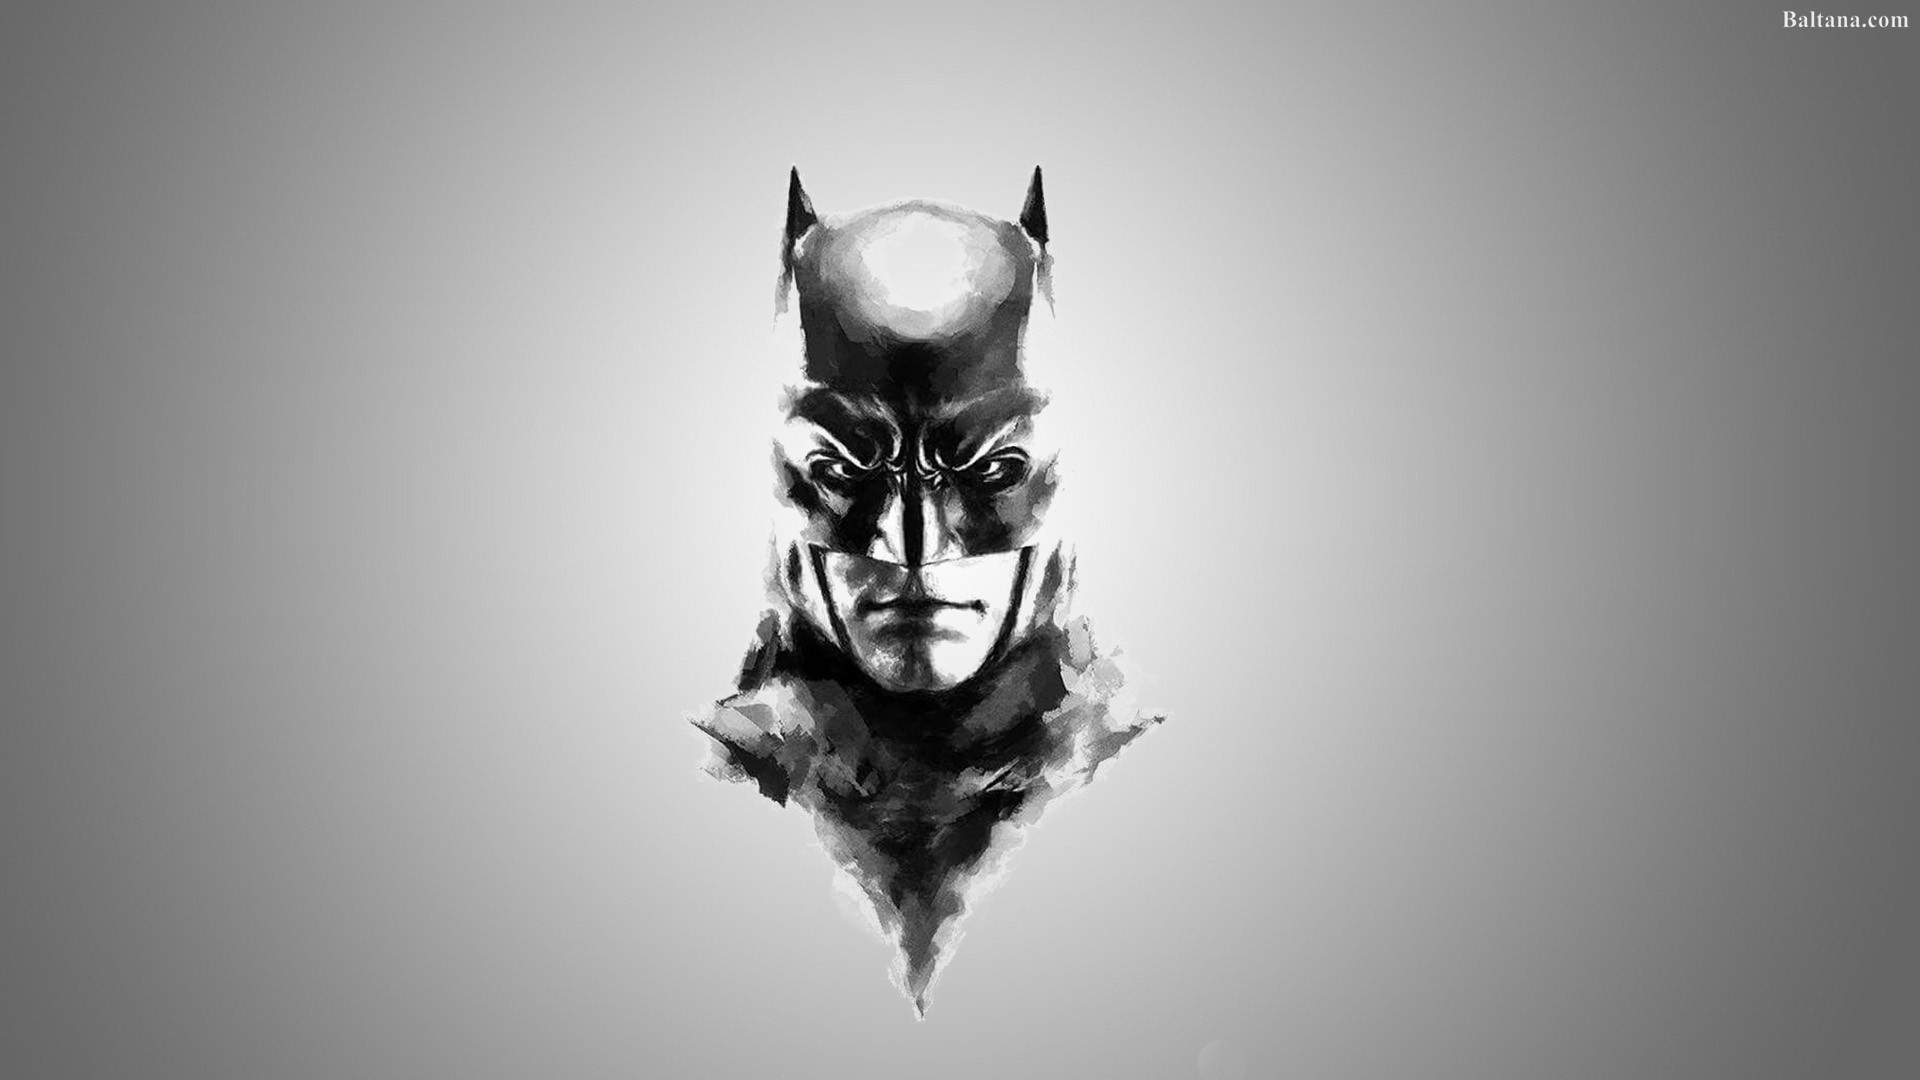 Batman Hd Background Wallpaper - Batman Png - HD Wallpaper 